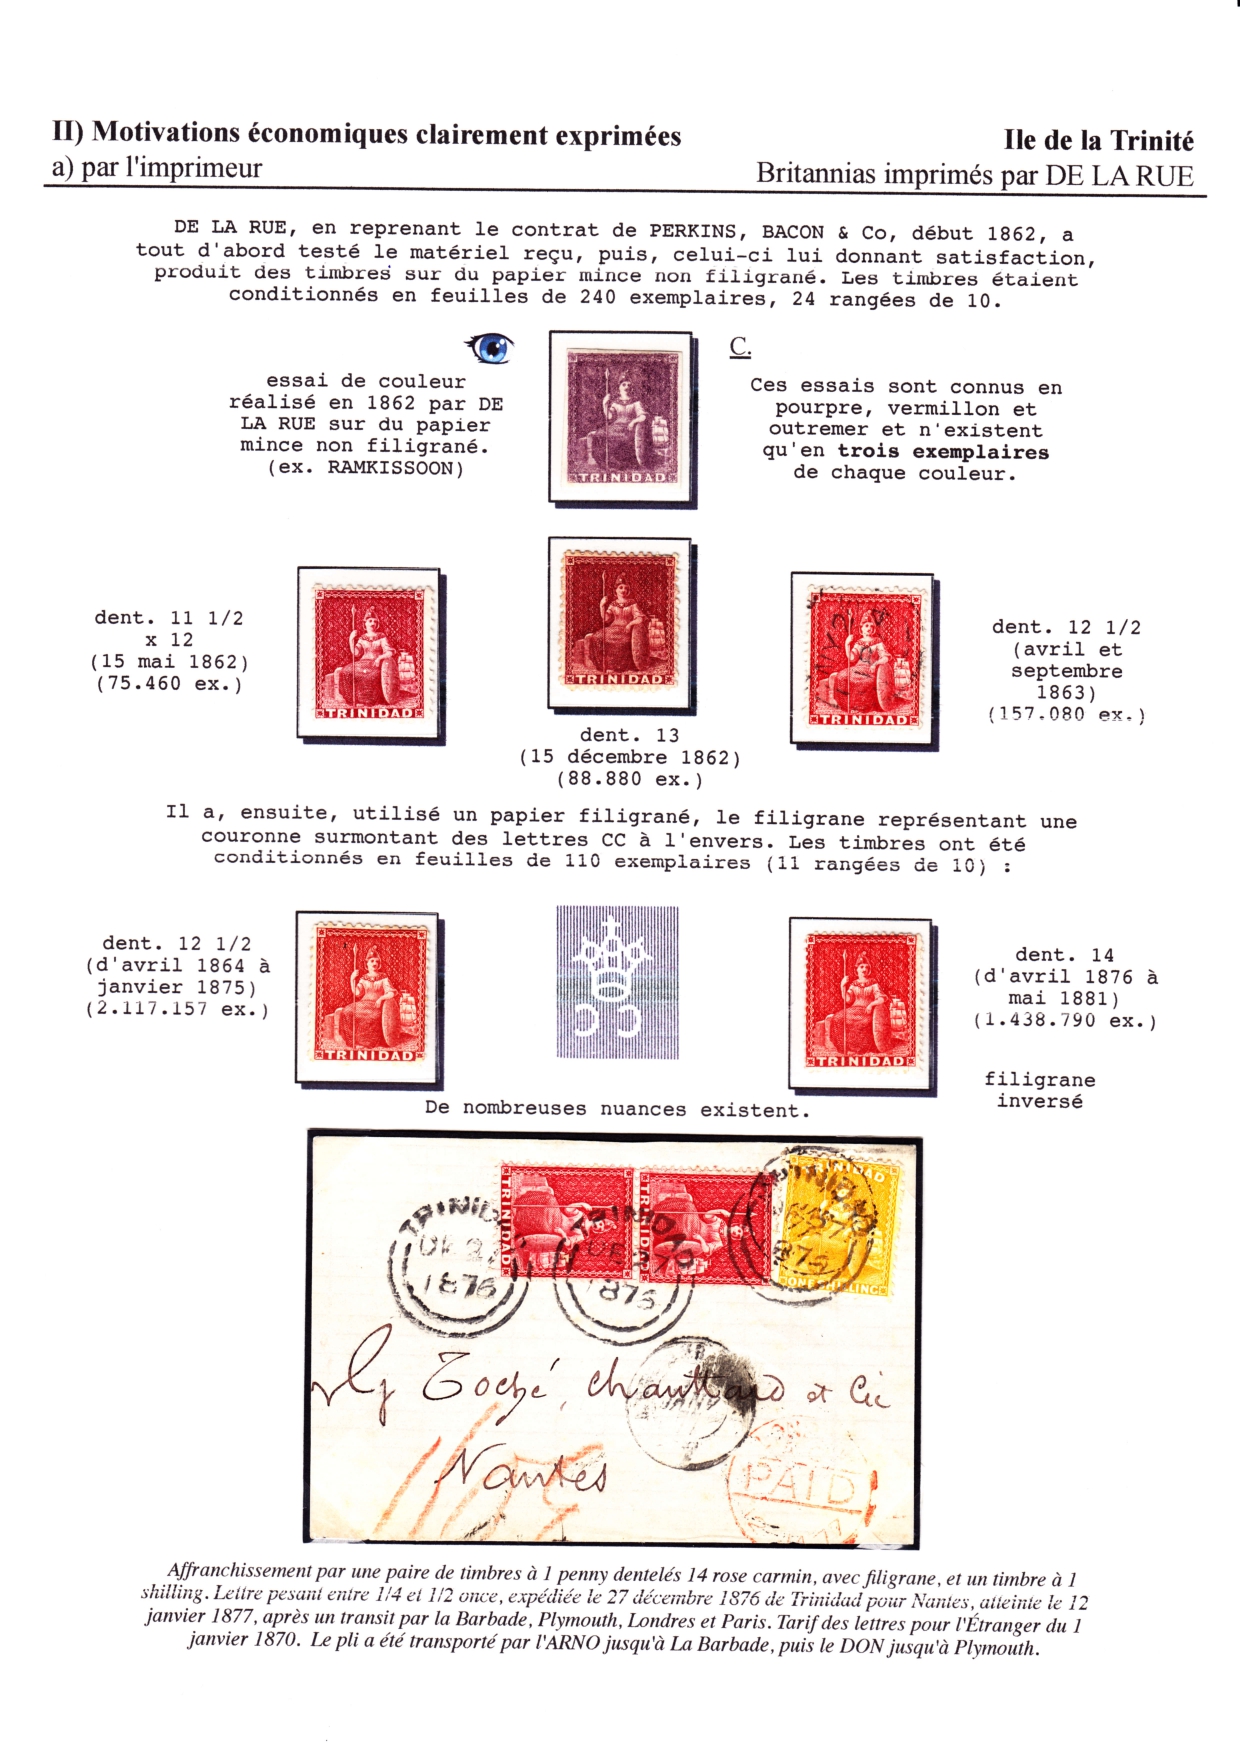 Les d������buts des timbres sans valeur faciale apparente p. 29